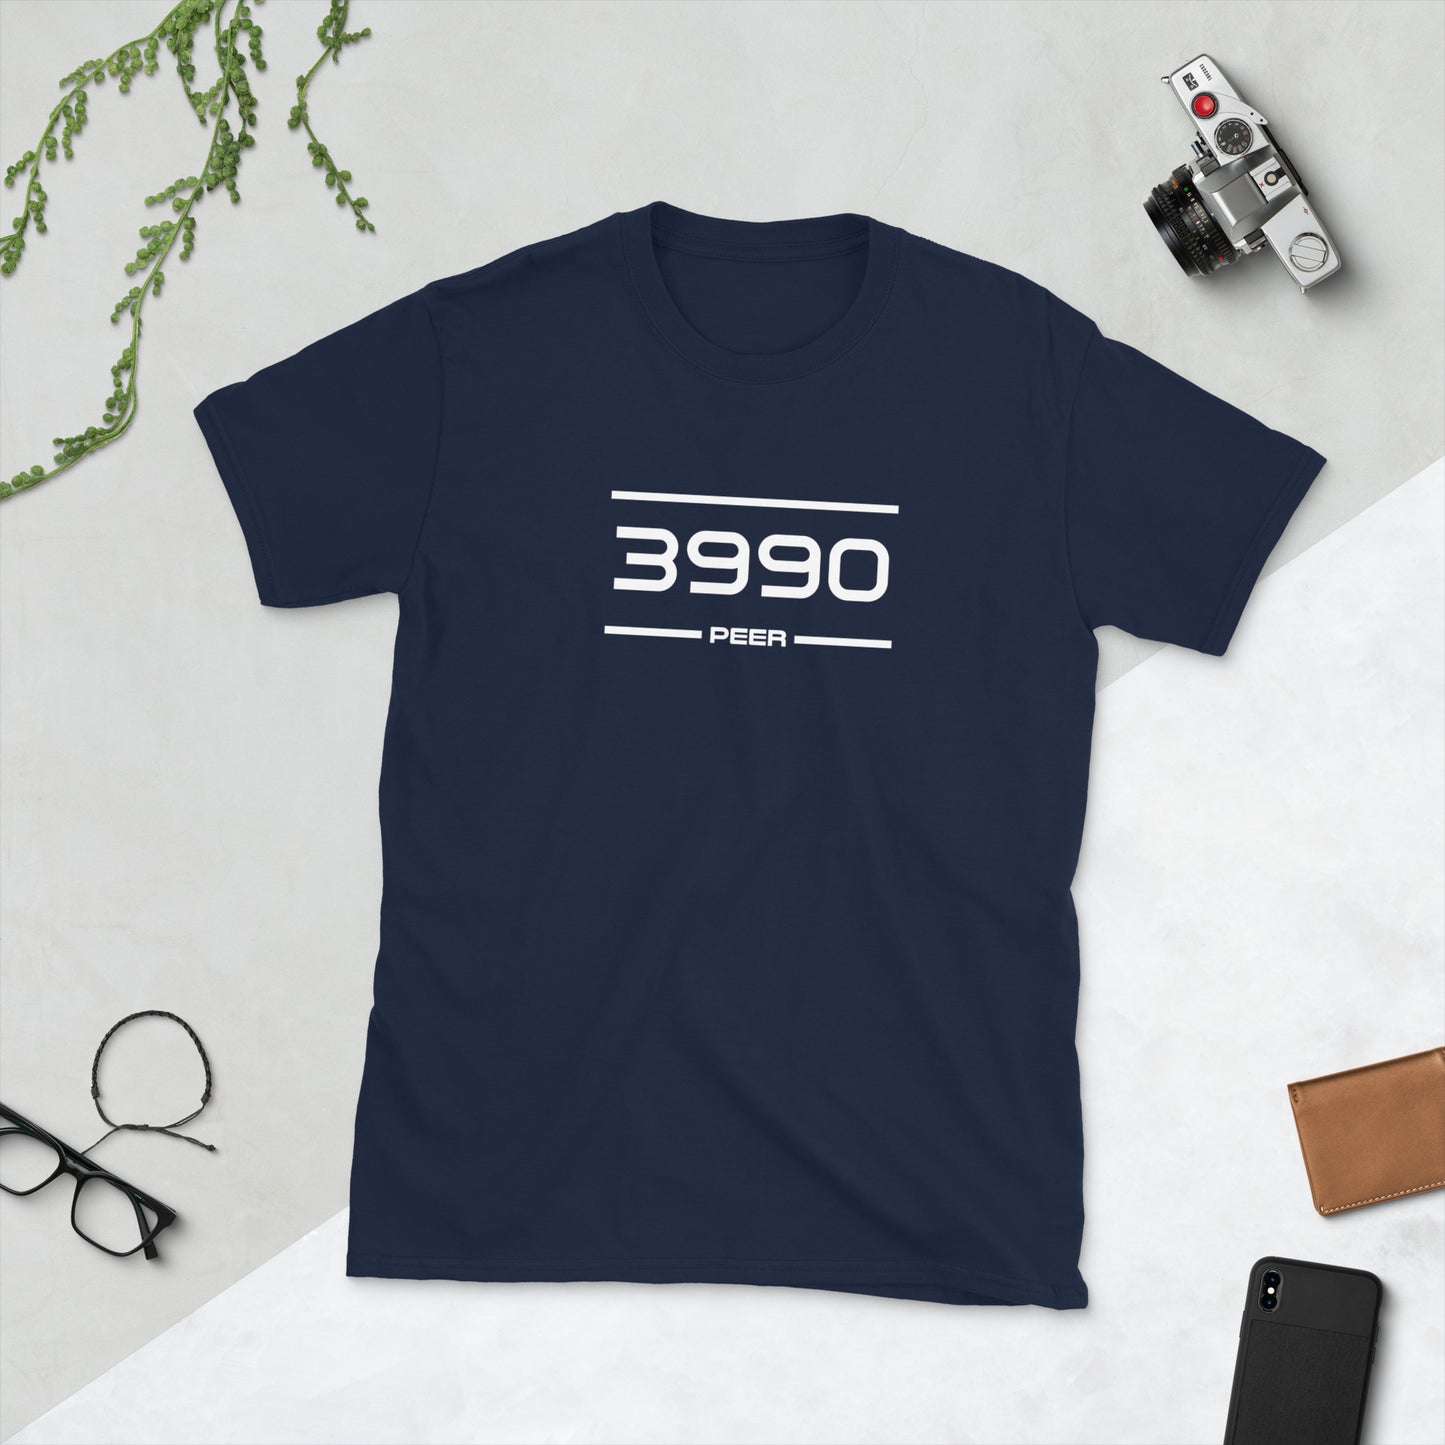 Tshirt - 3990 - Peer